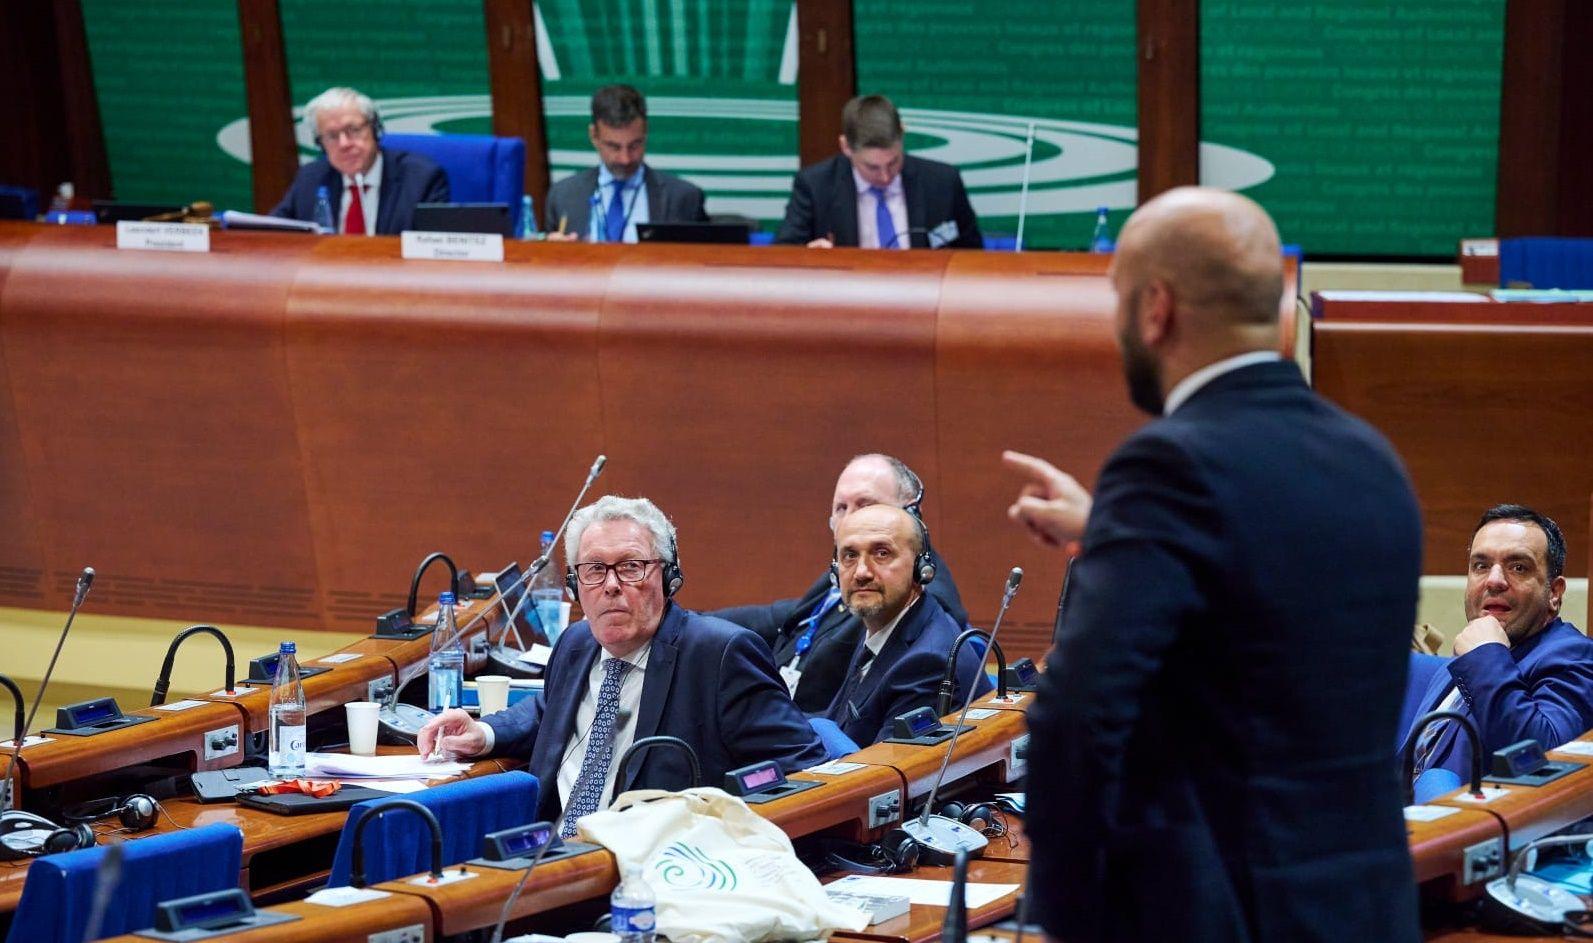 heren van de Raad van Europa in vergadering